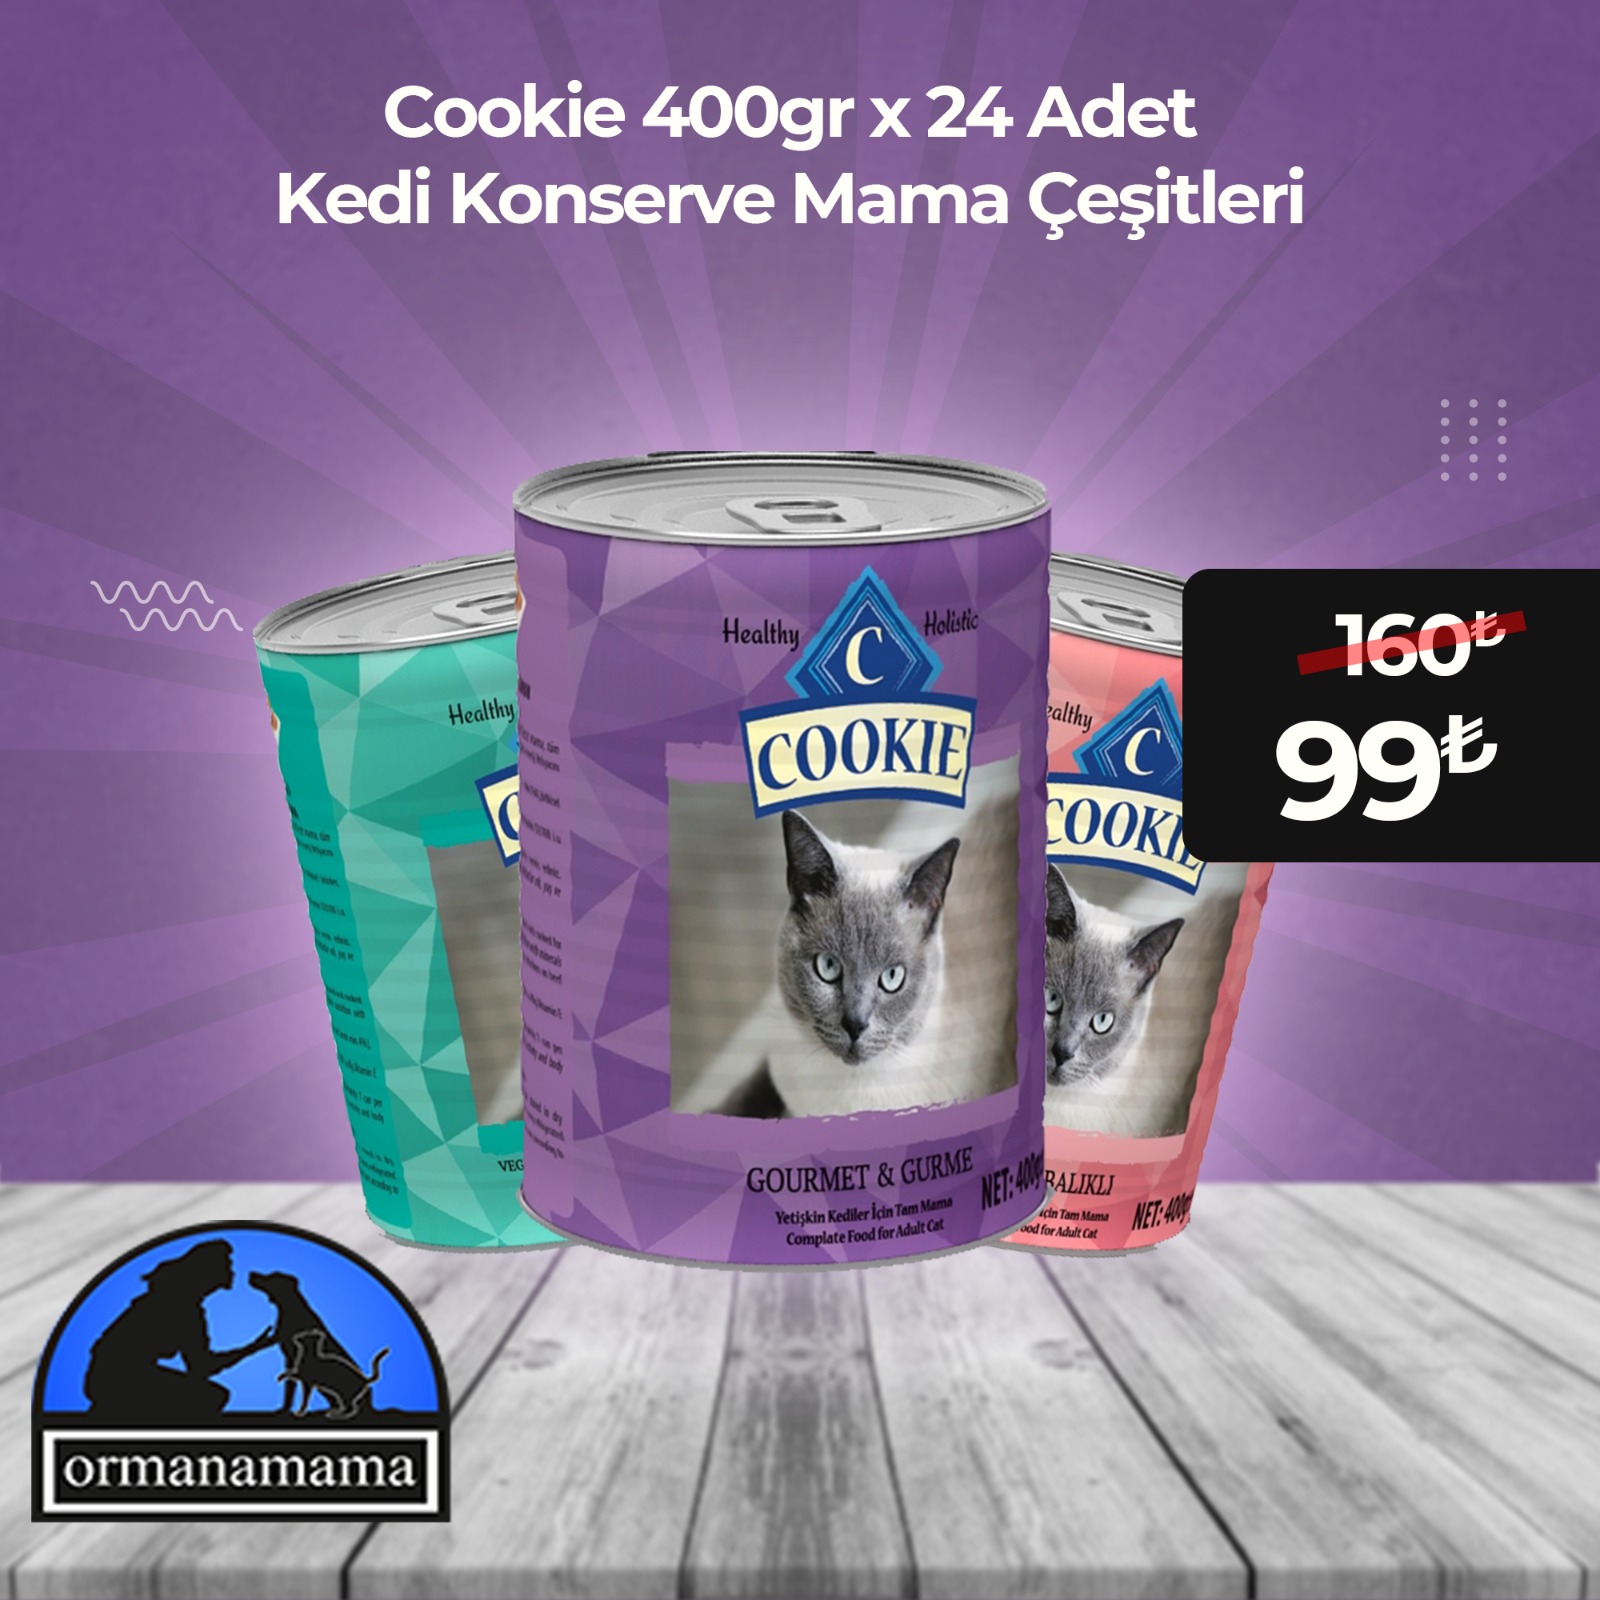 Cookie Kedi Konserve Mama Çeşitleri 400gr x 24 Adet